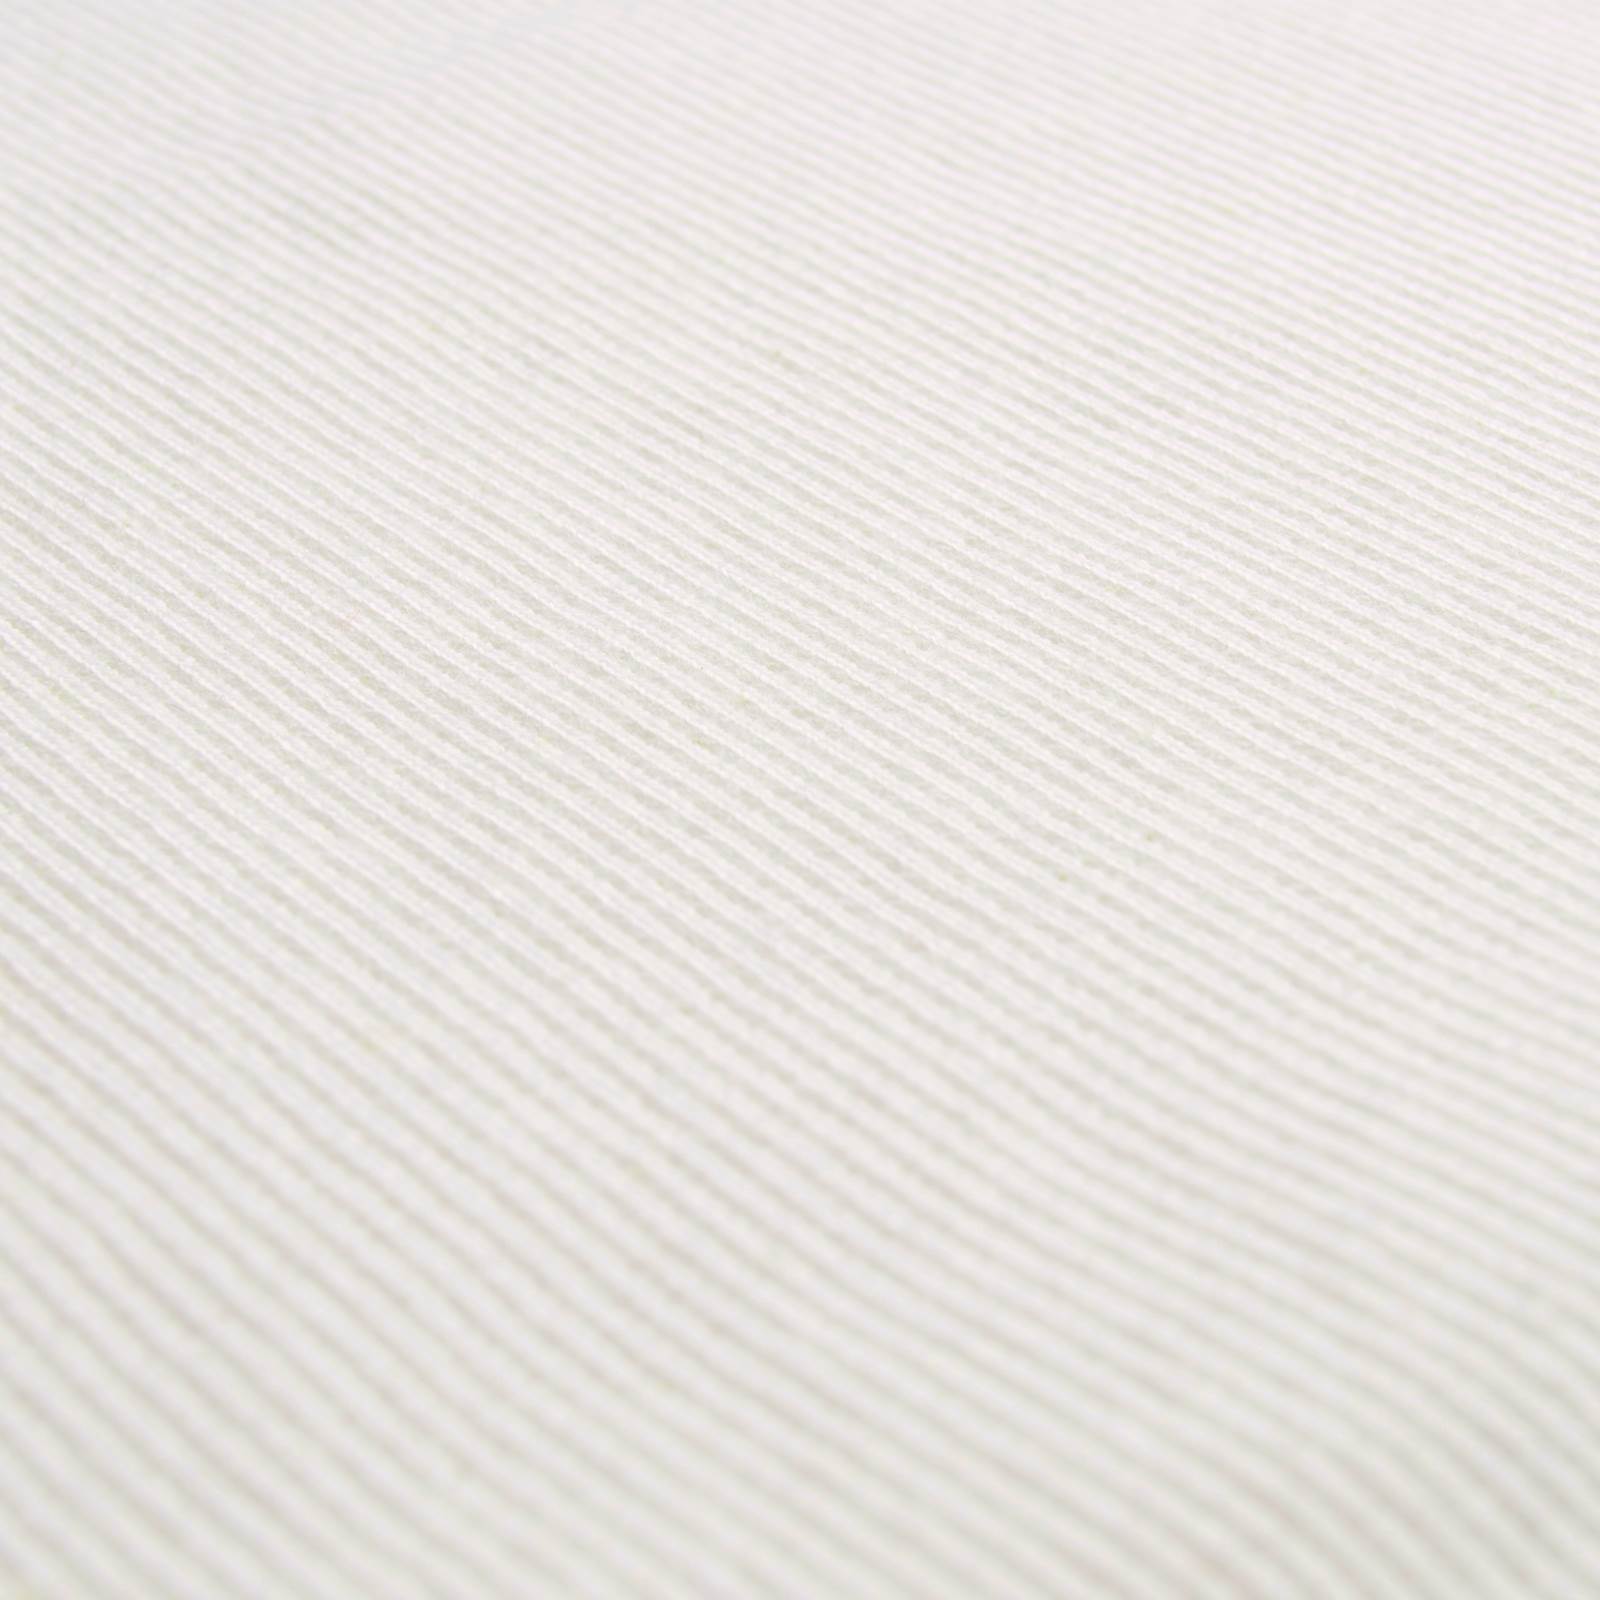 Knitted cuffs - tubular fabric - cream - per 10 cm